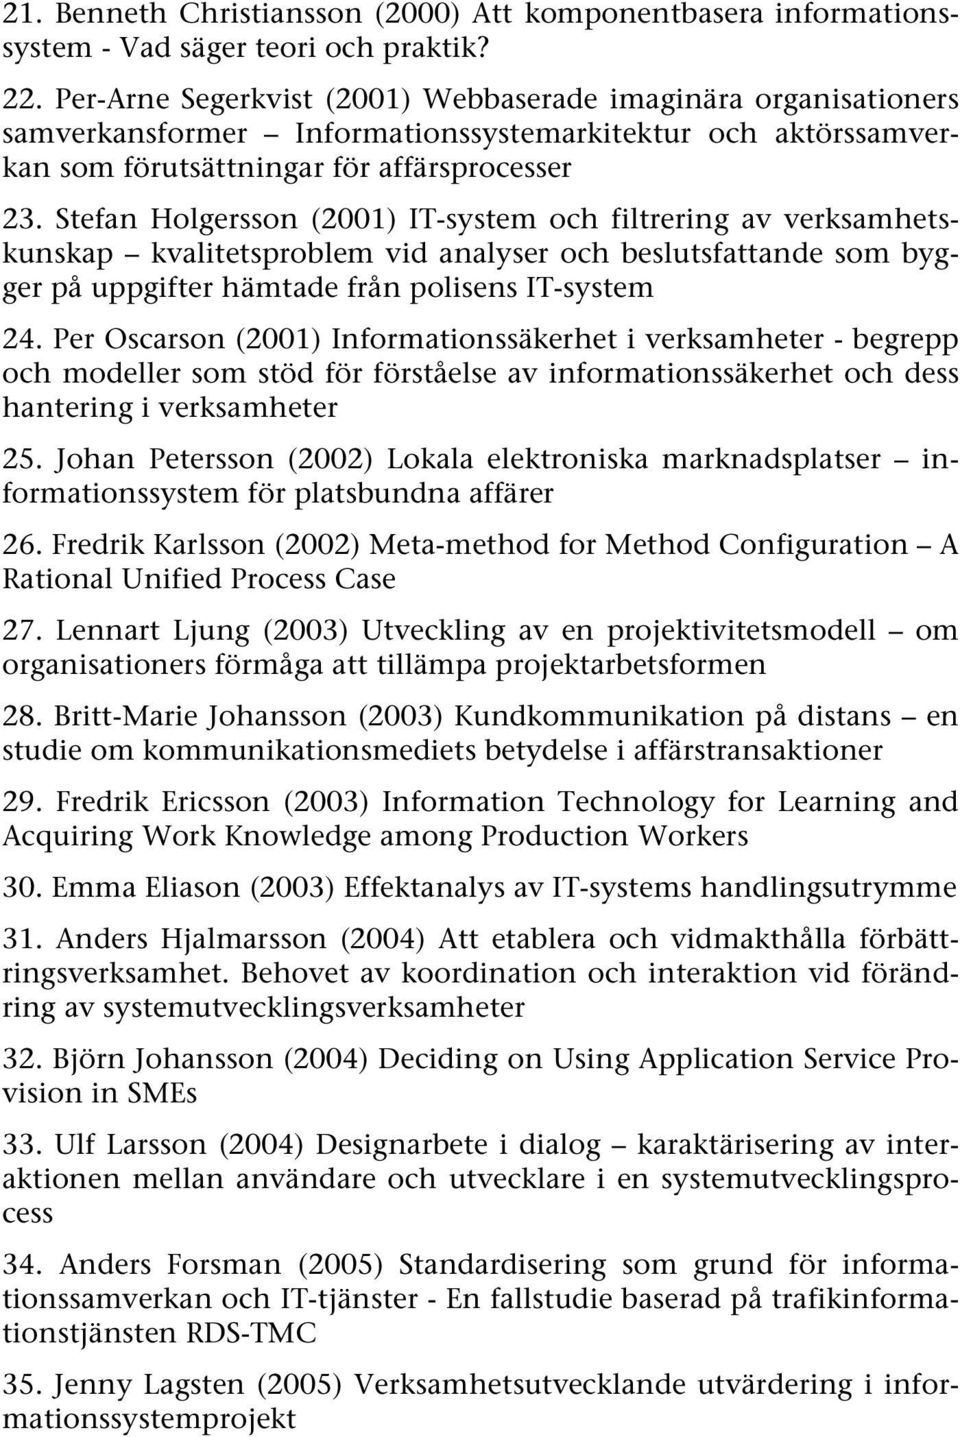 Stefan Holgersson (2001) IT-system och filtrering av verksamhetskunskap kvalitetsproblem vid analyser och beslutsfattande som bygger på uppgifter hämtade från polisens IT-system 24.